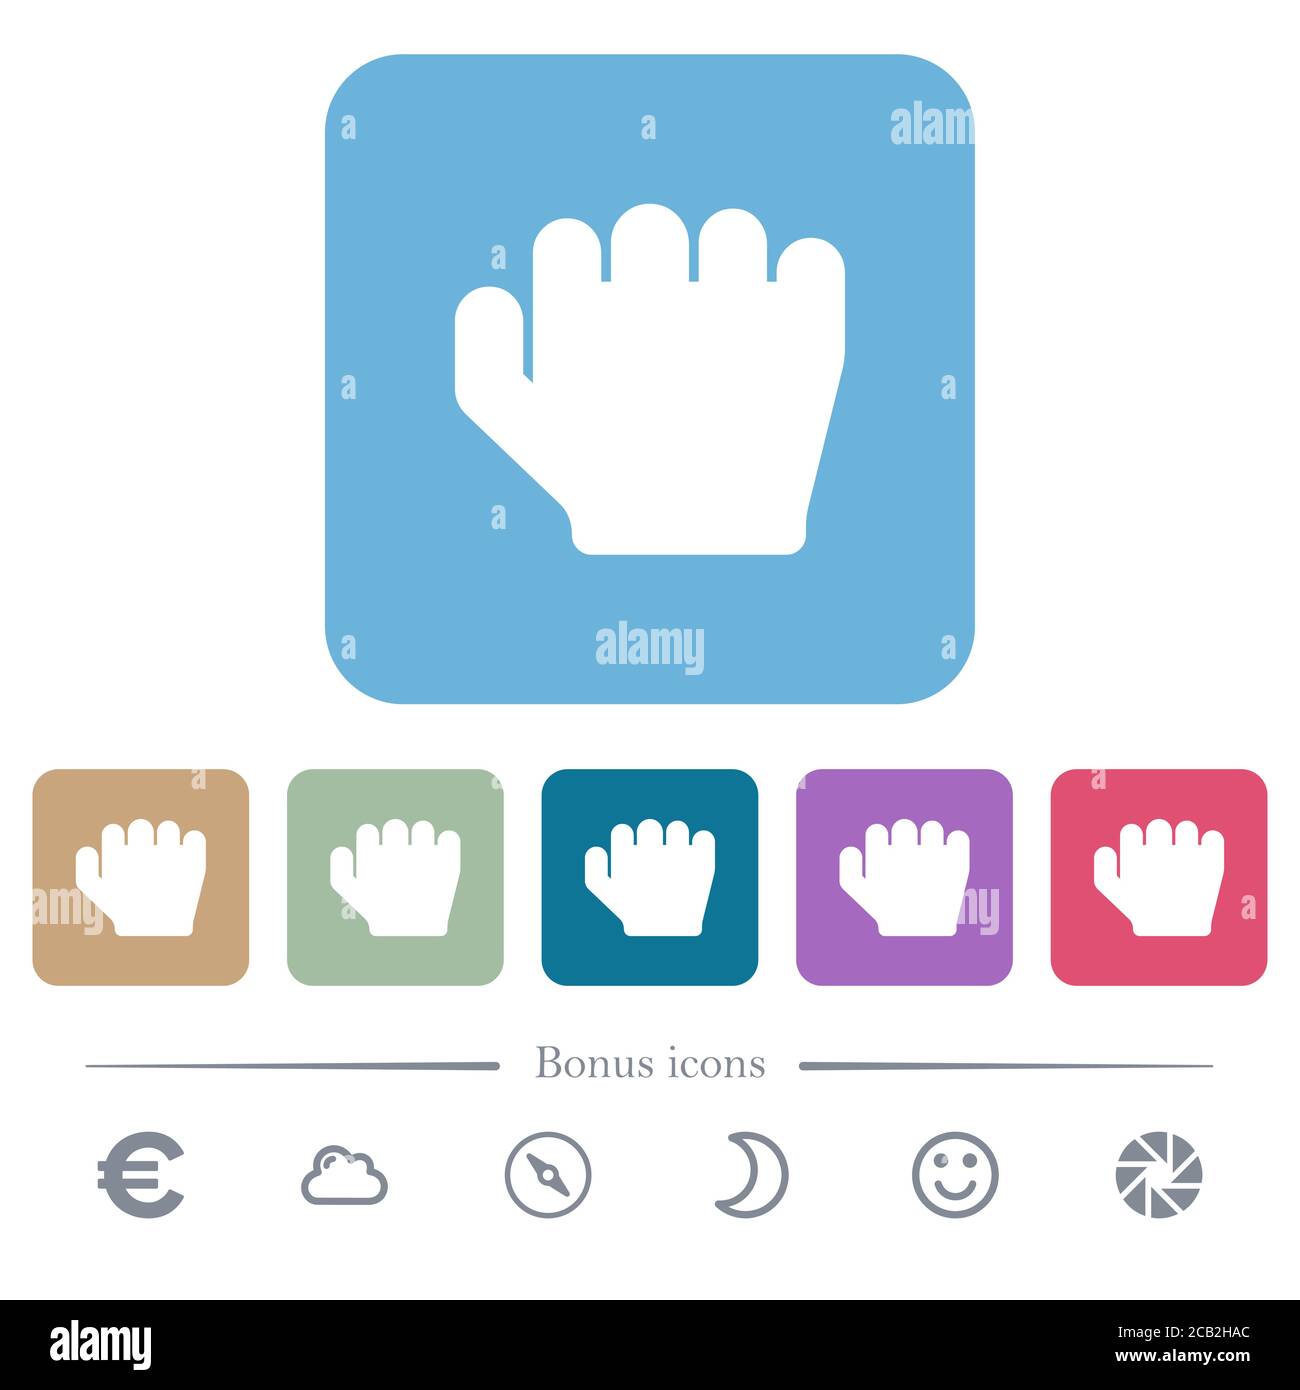 Rechtshänder greifen Geste weißen flachen Symbolen auf Farbe abgerundeten quadratischen Hintergründe. 6 Bonus-Symbole enthalten Stock Vektor